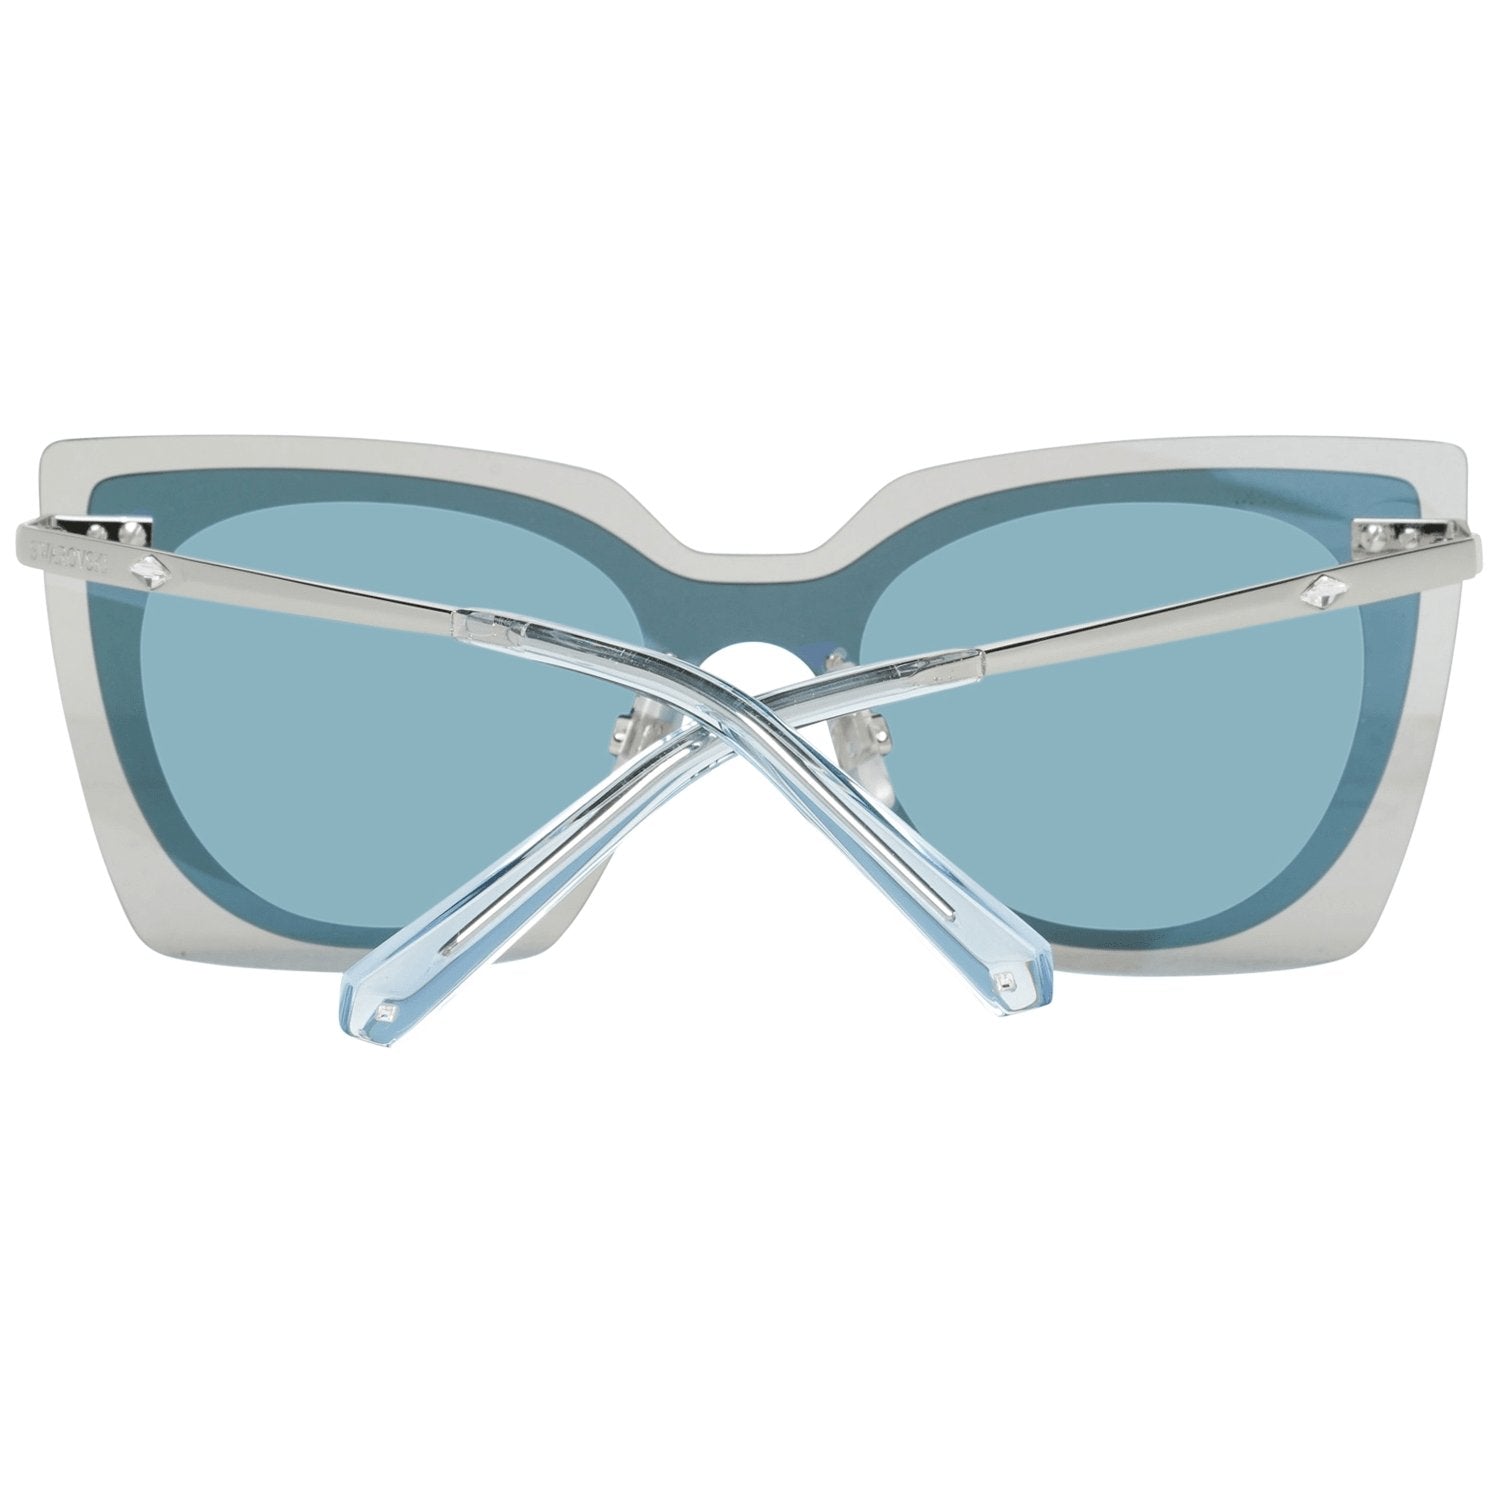 Swarovski Blue Sunglasses for Woman - Fizigo